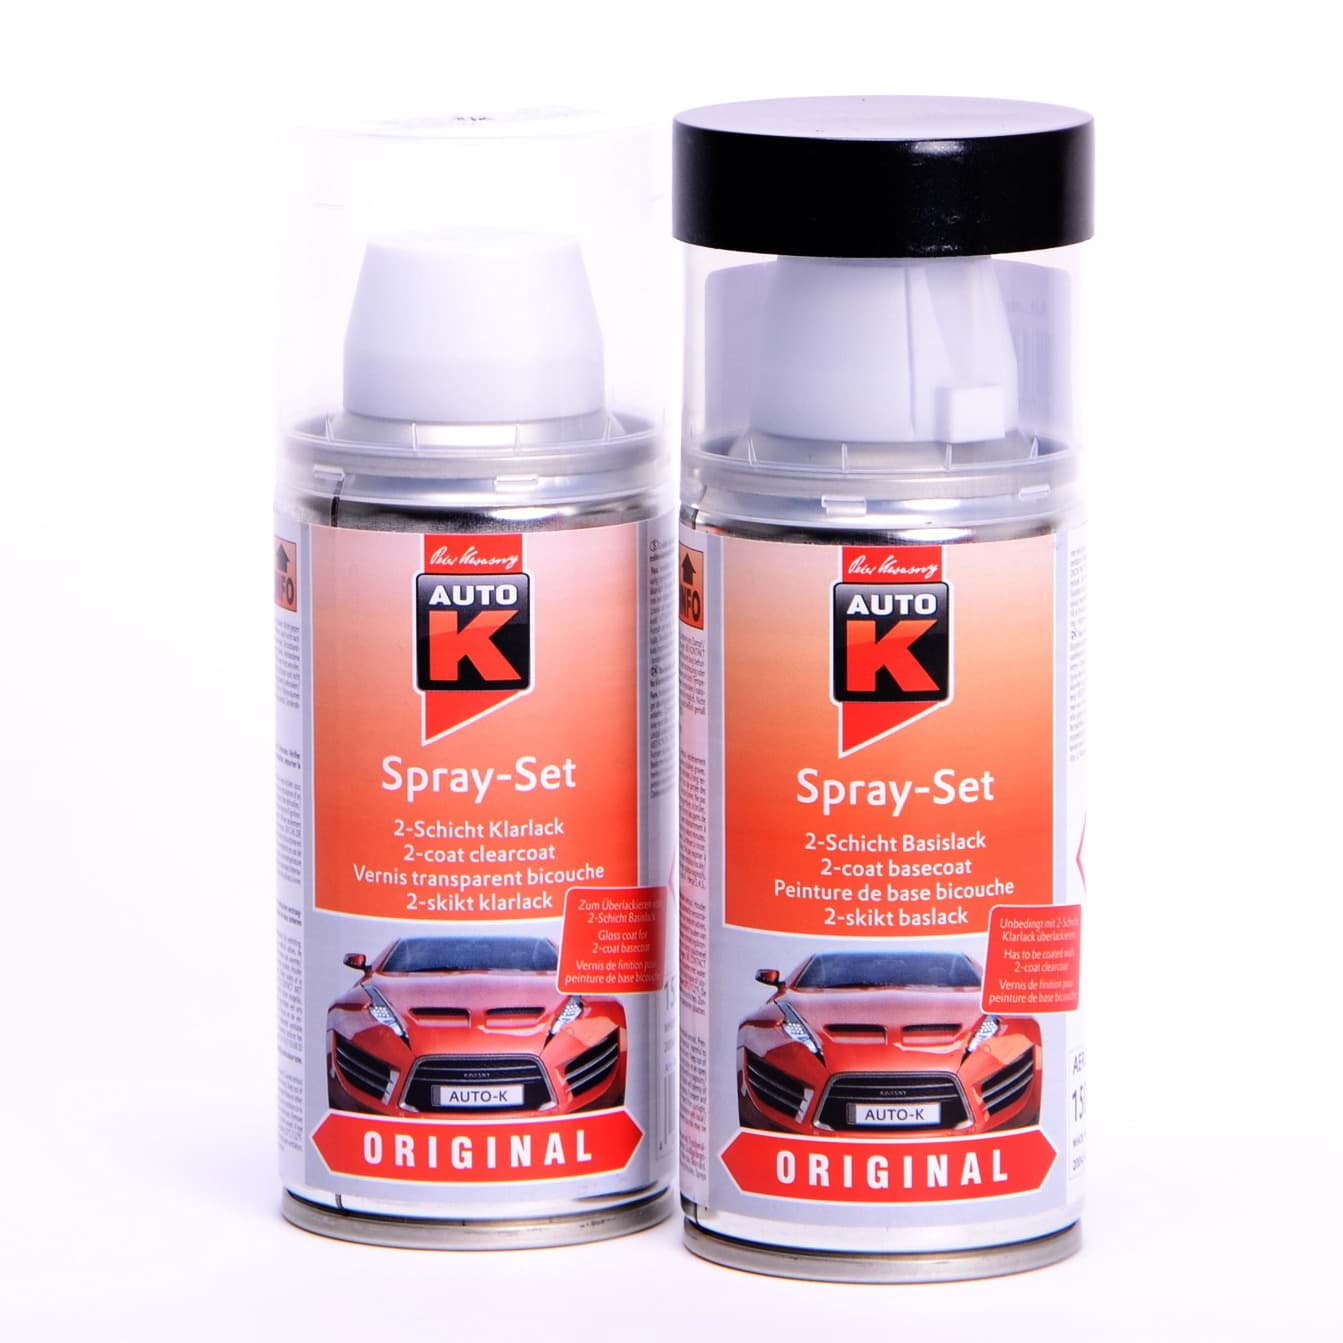 Afbeelding van Auto-K Spray-Set Autolack für Renault 620 Gris Argent met 43319